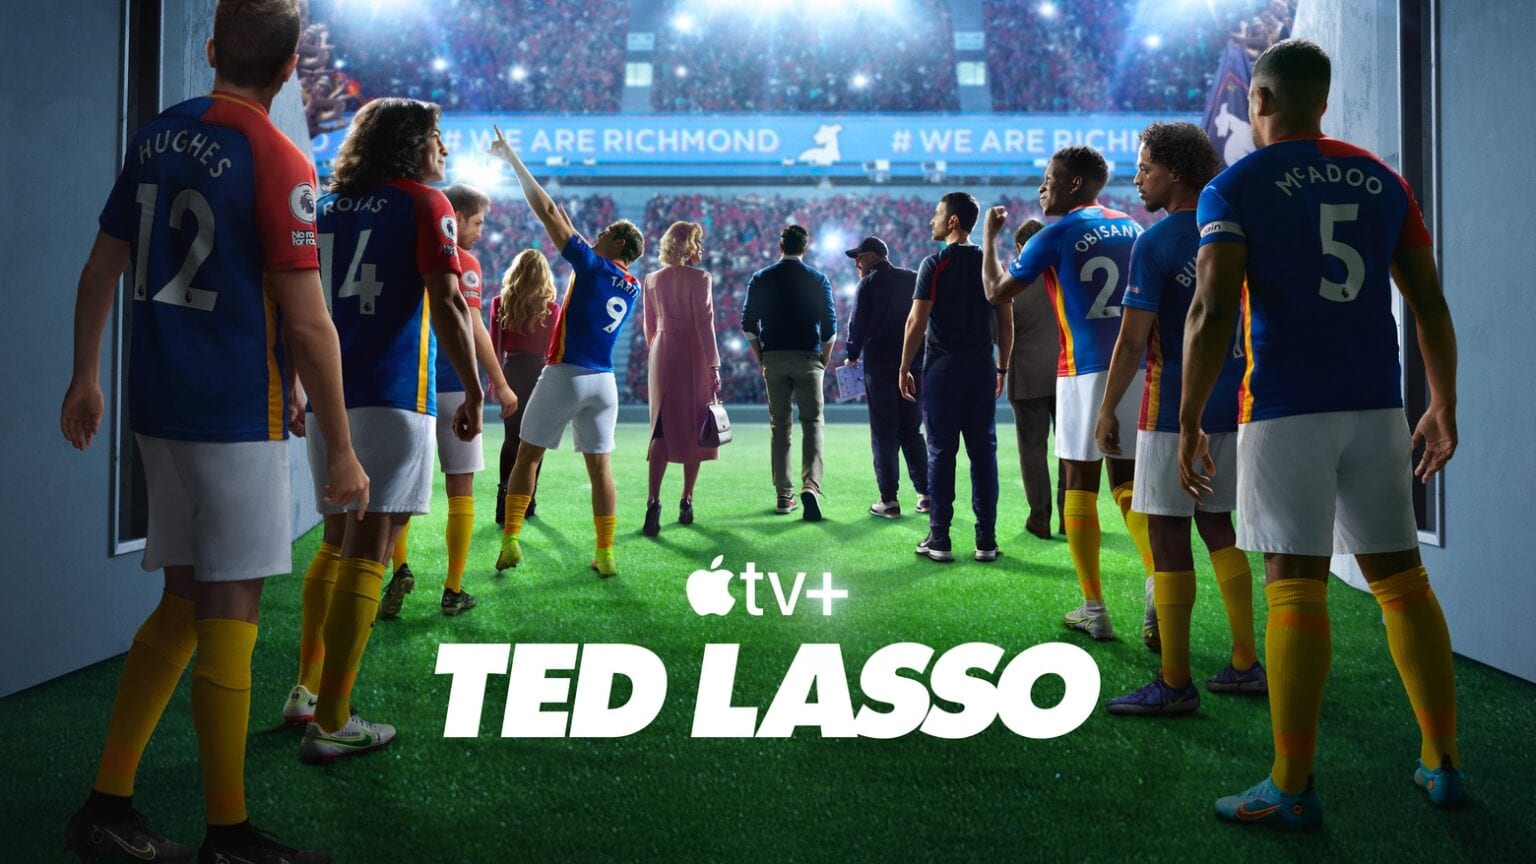 Fans rejoice! 'Ted Lasso' returns in season 3 on March 15